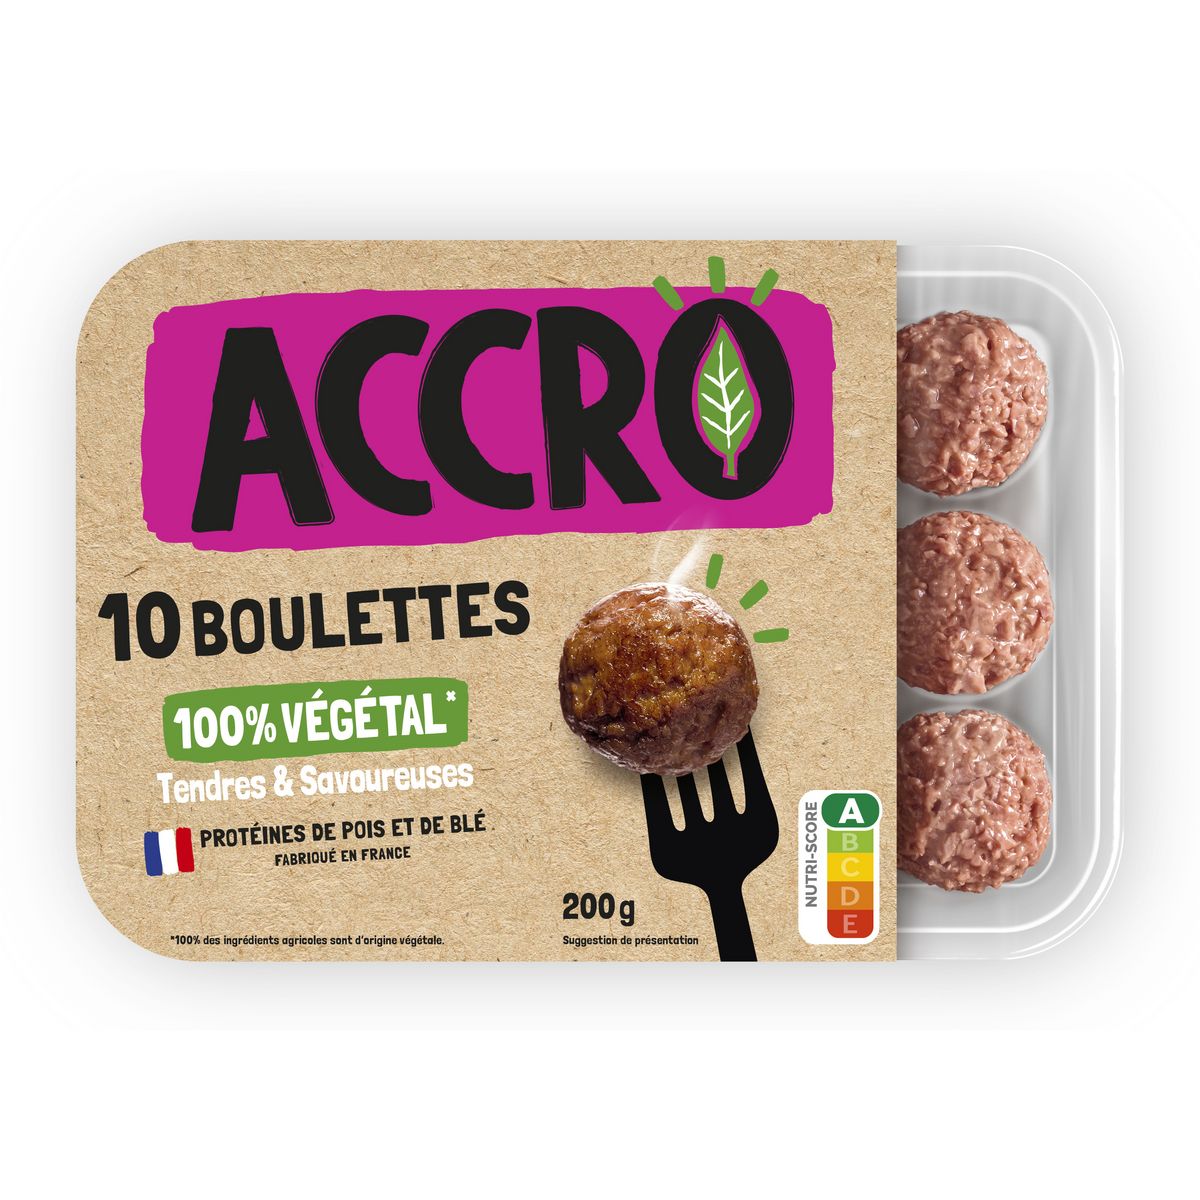 ACCRO Boulettes végétales 10 pièces 200g